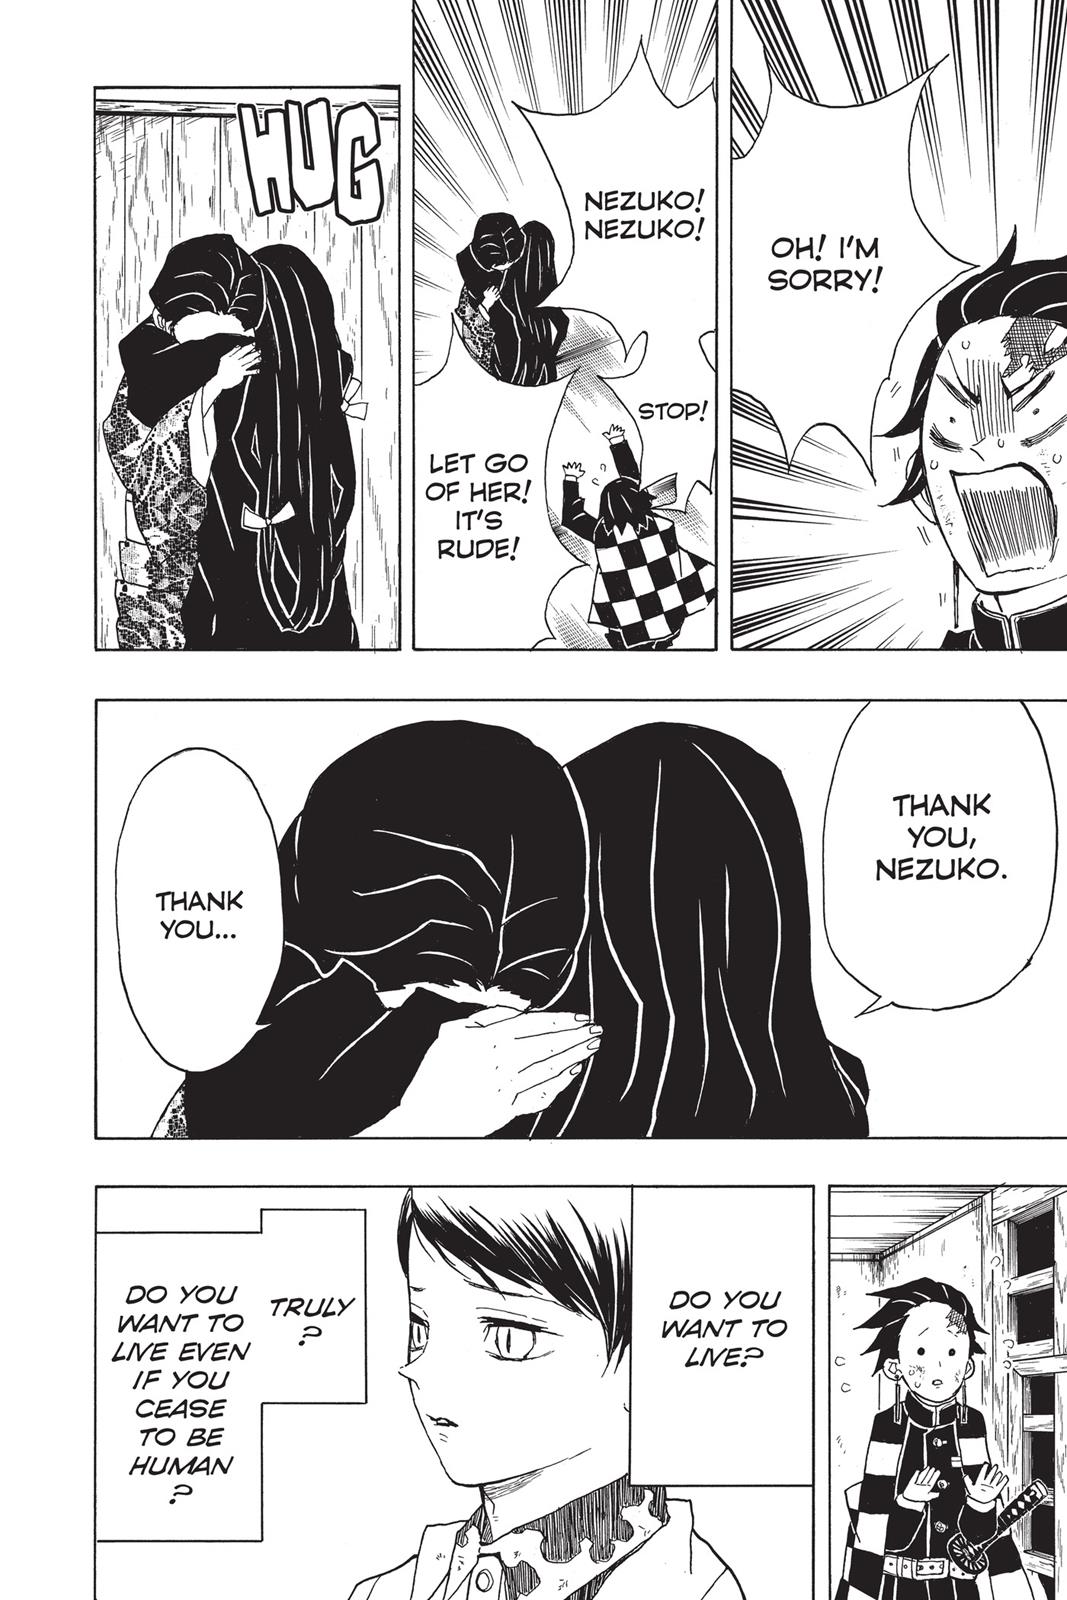 Demon Slayer Manga Manga Chapter - 19 - image 9